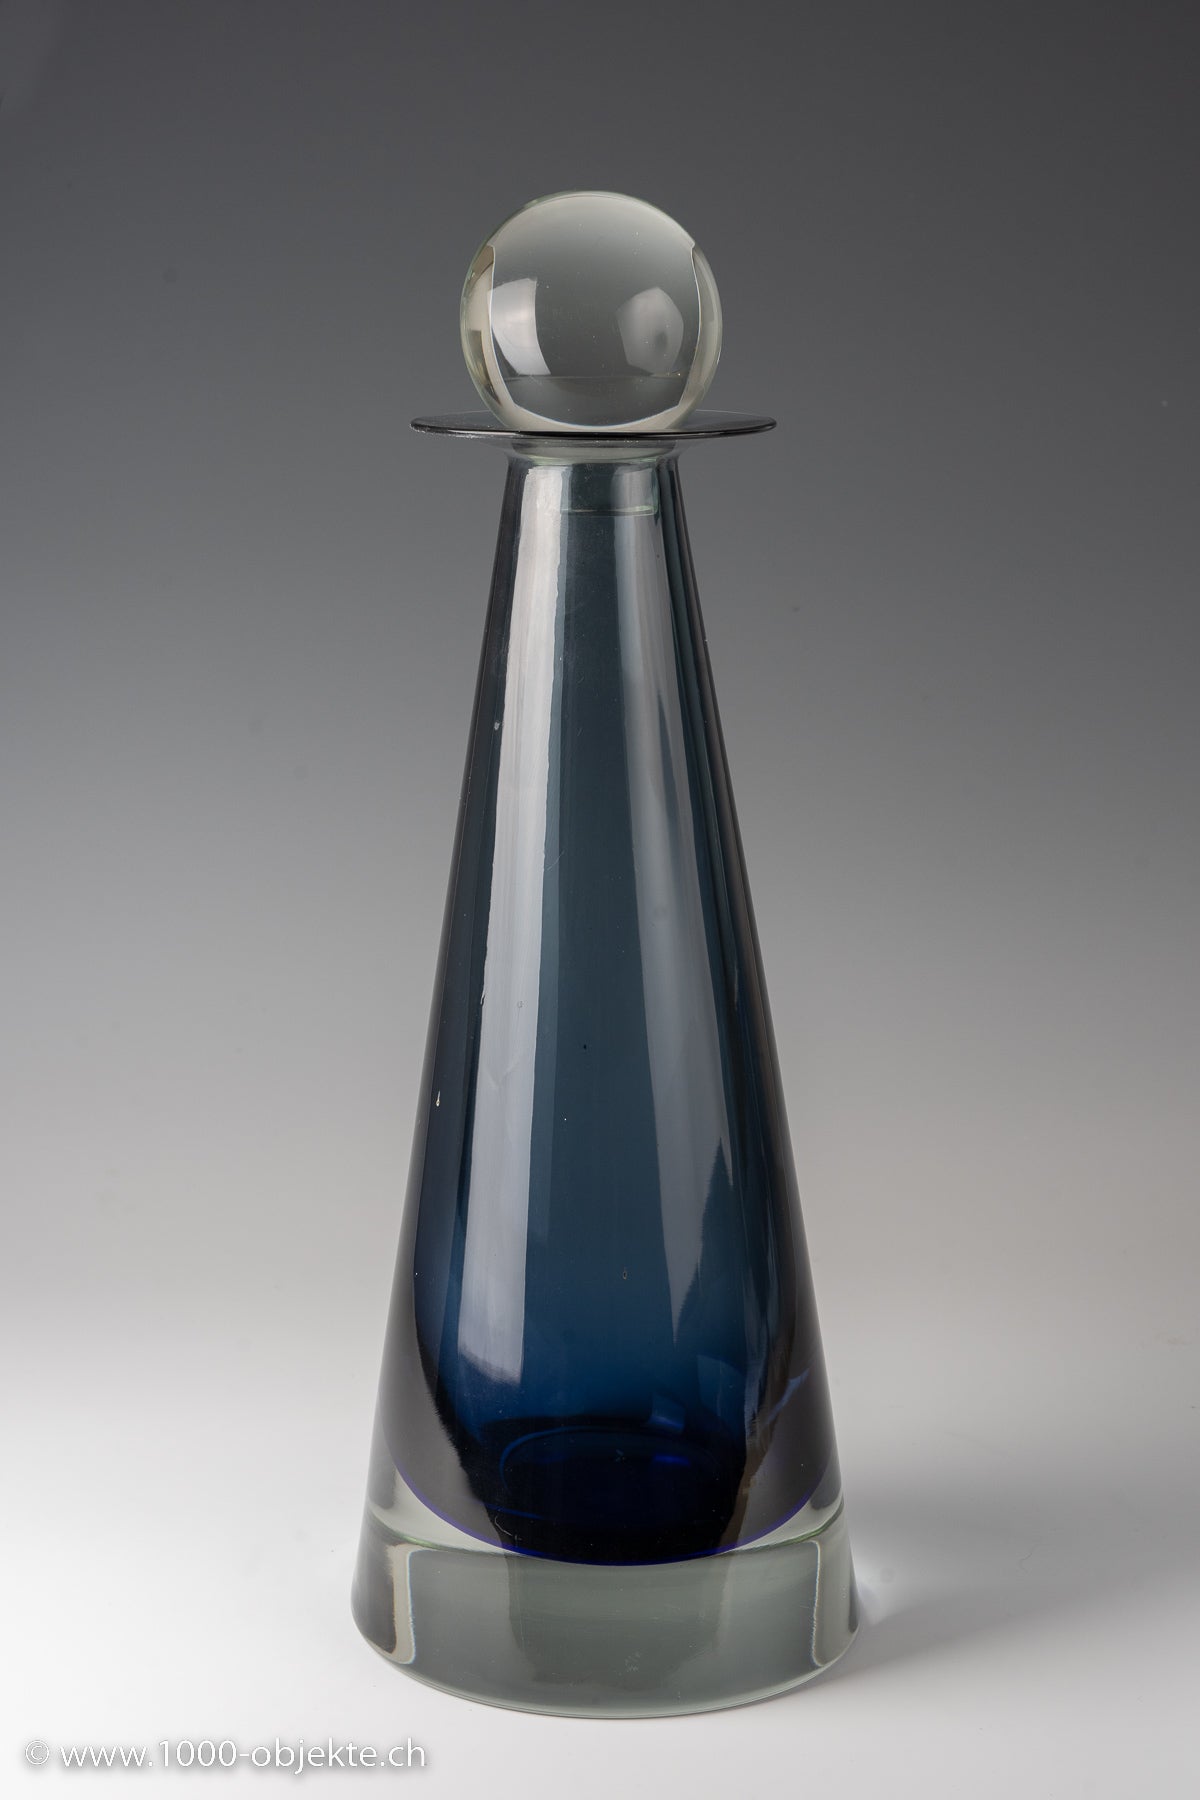 Seguso, Flavio Poli Murano Amber Glass Bottle with Stopper